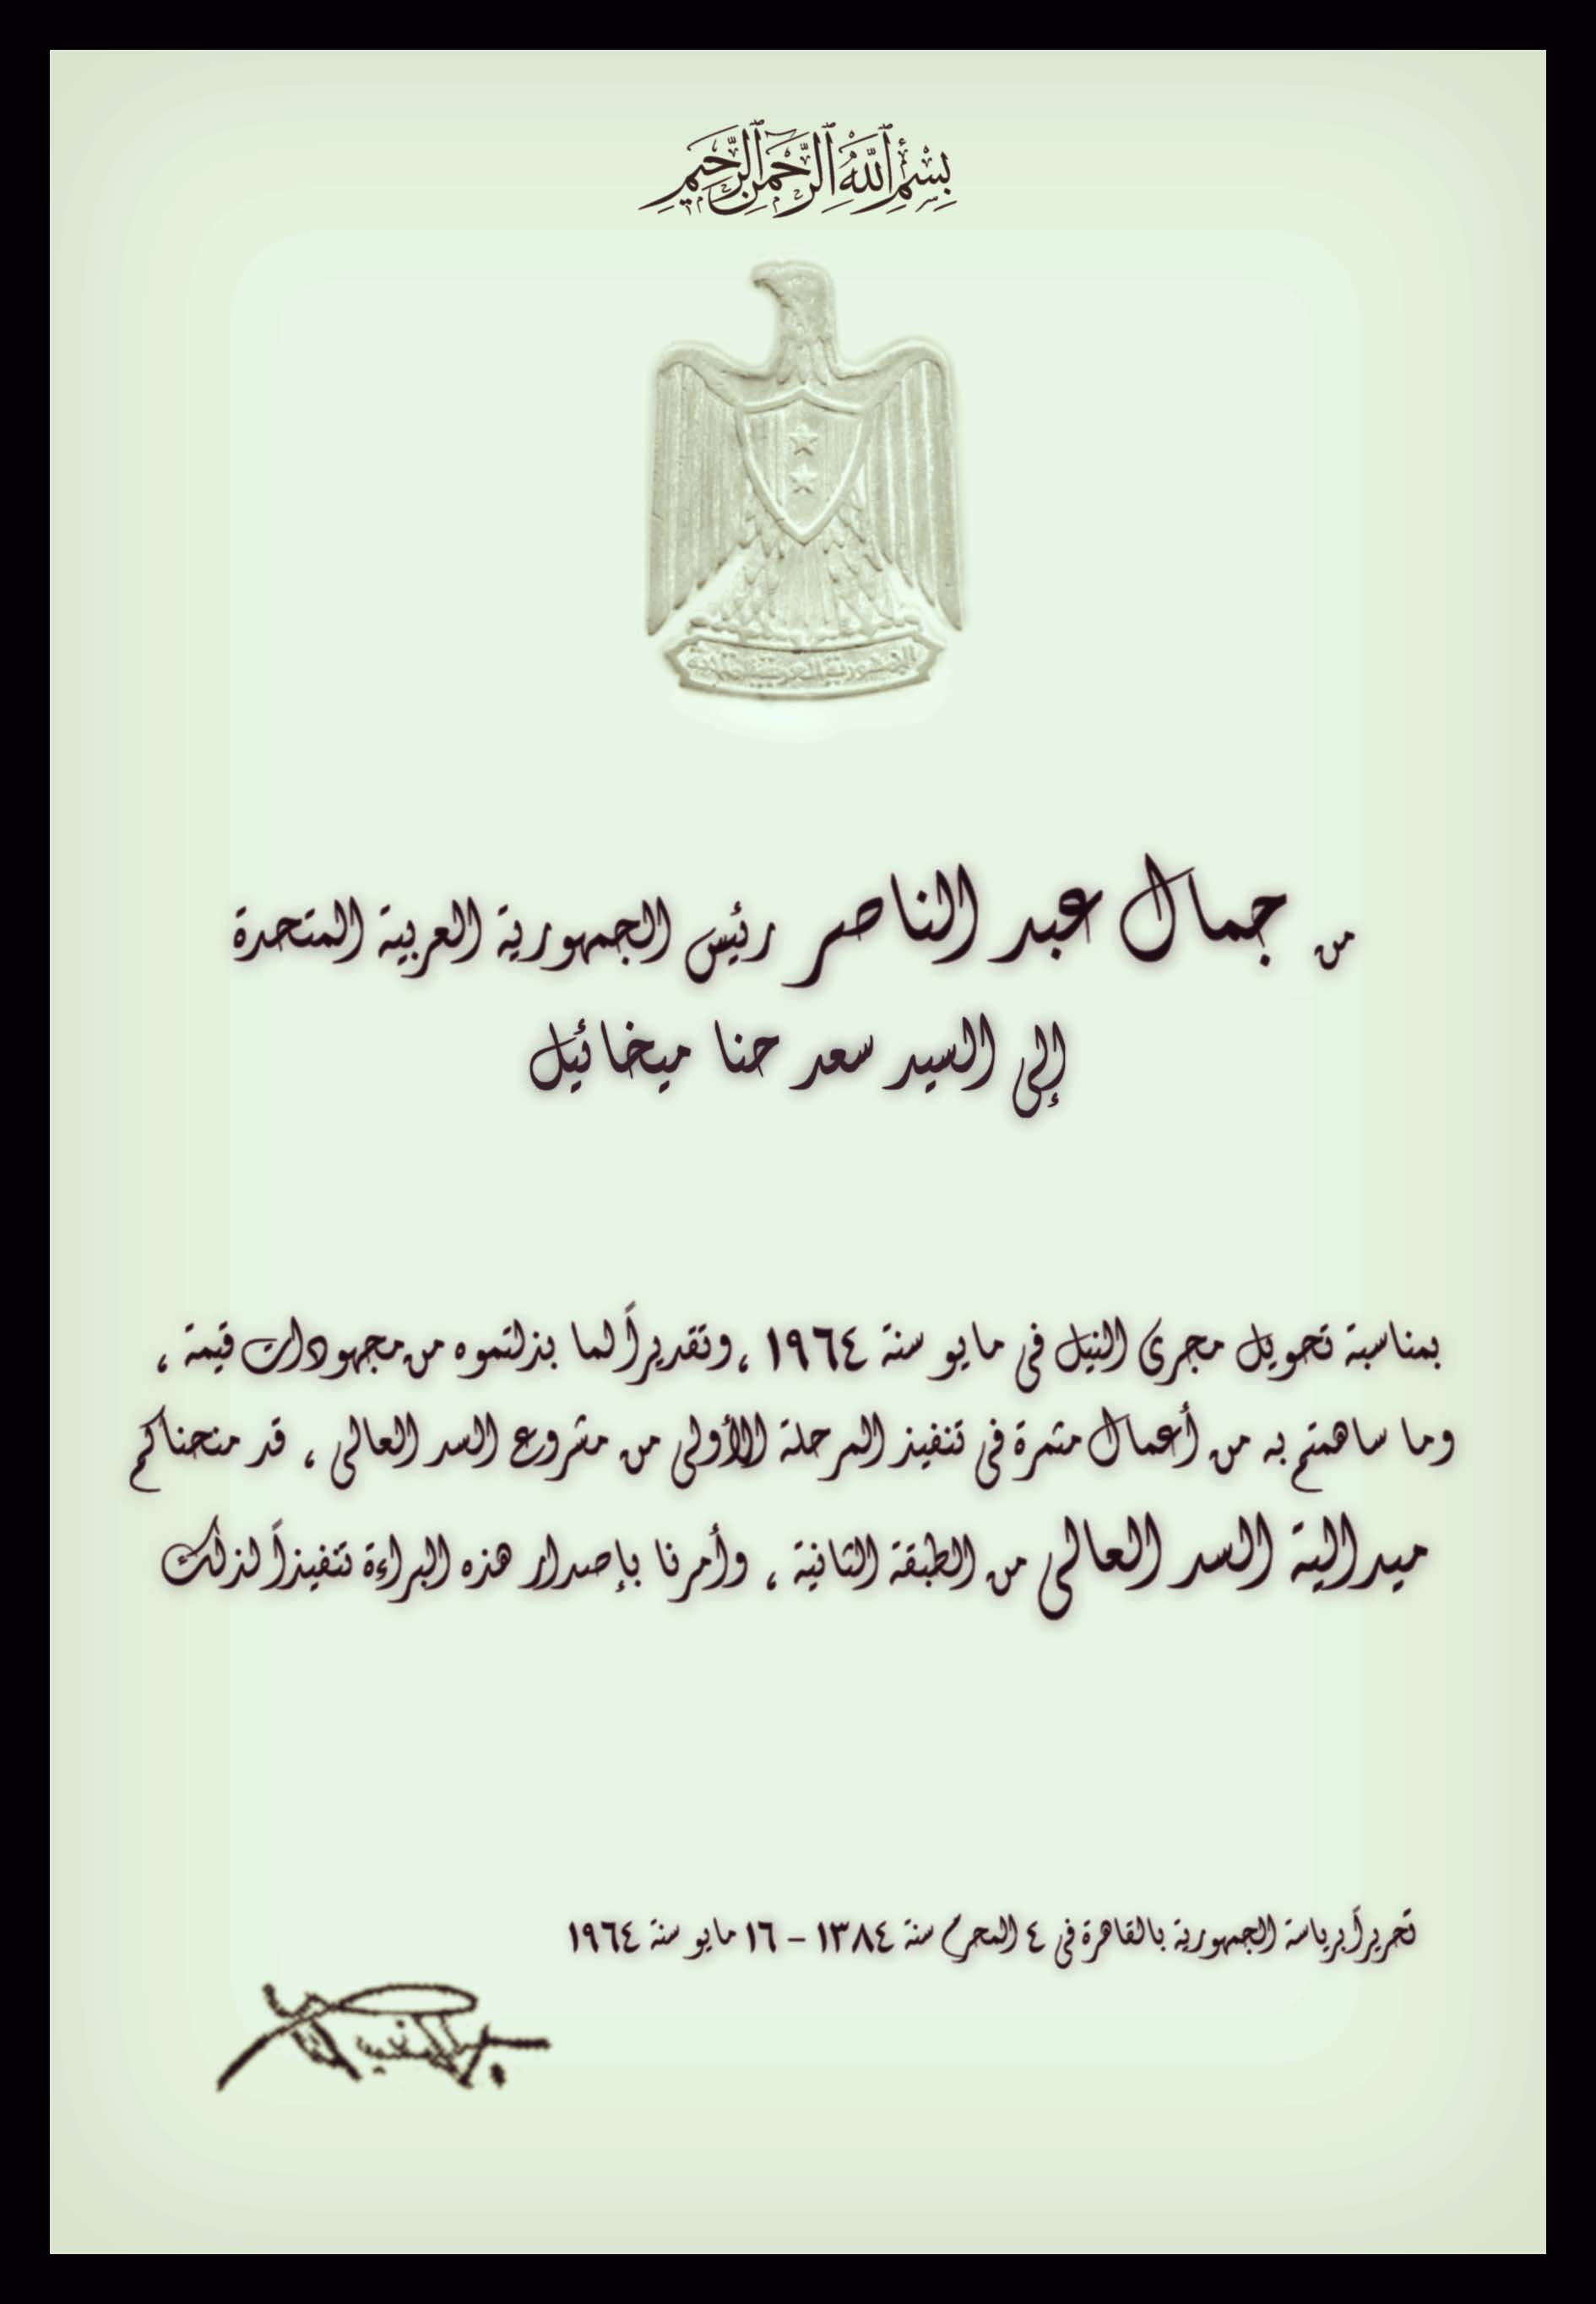 Certificate from Abd El Nasser